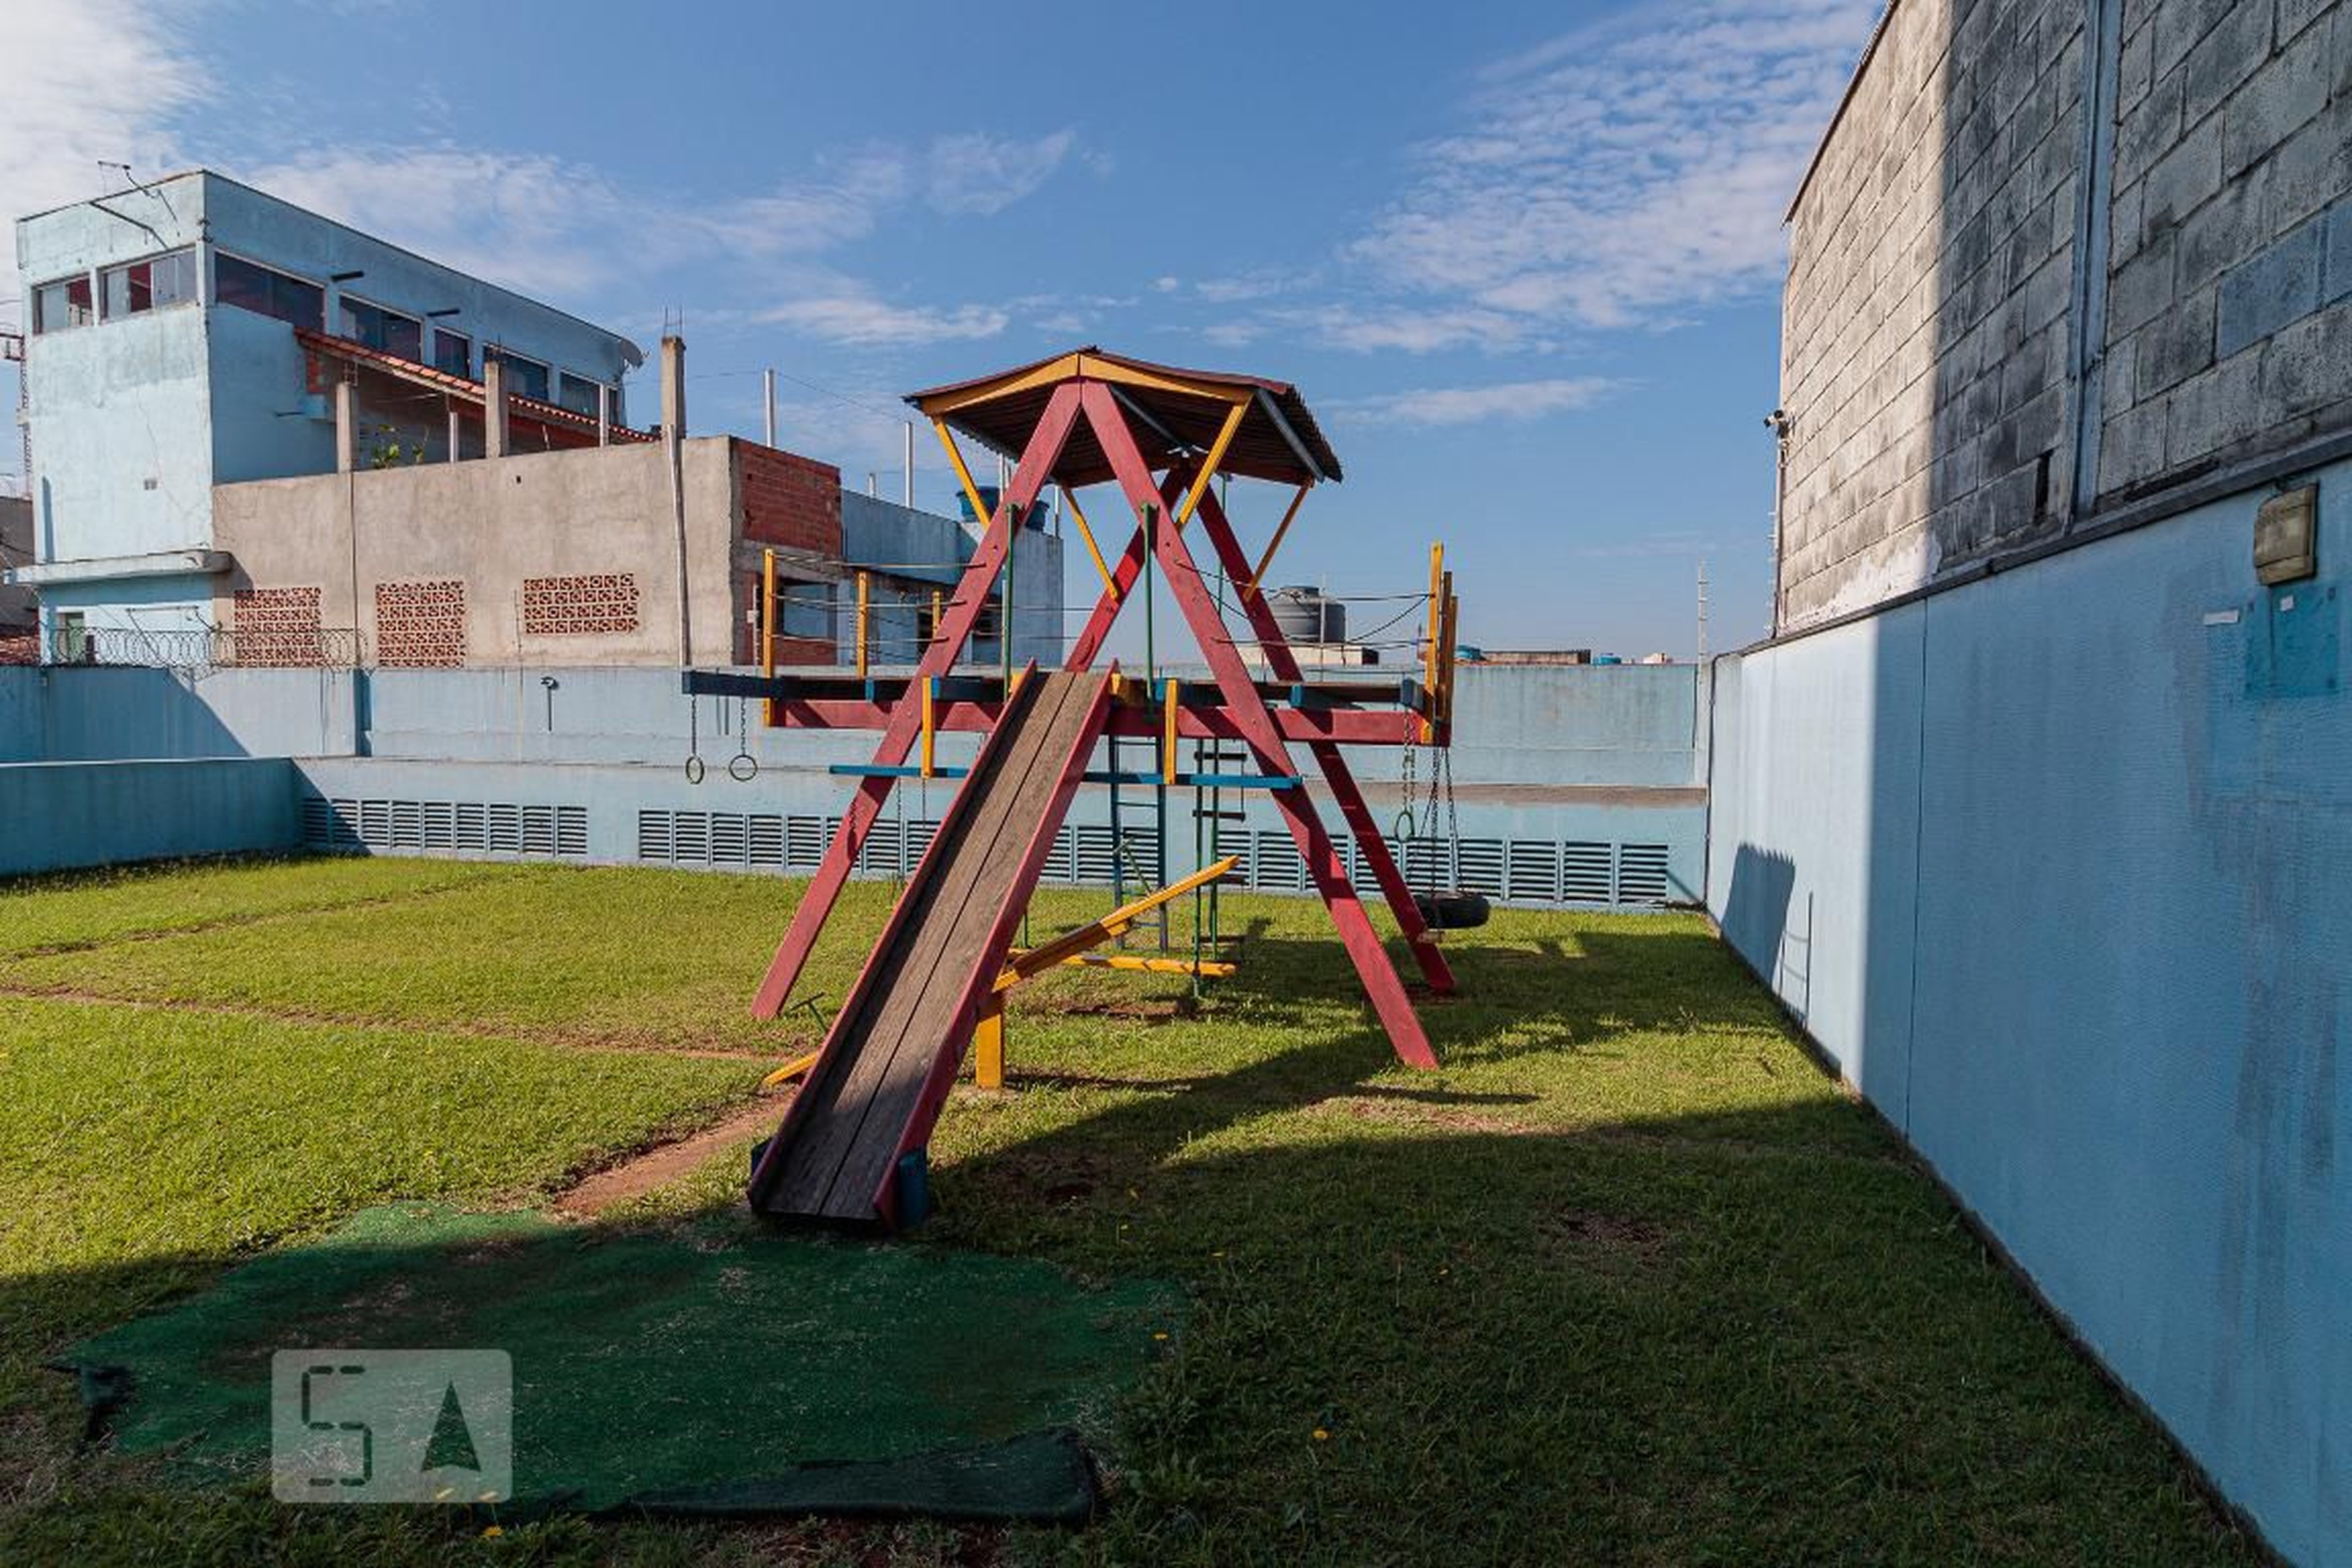 Playground - Edifício Rafael